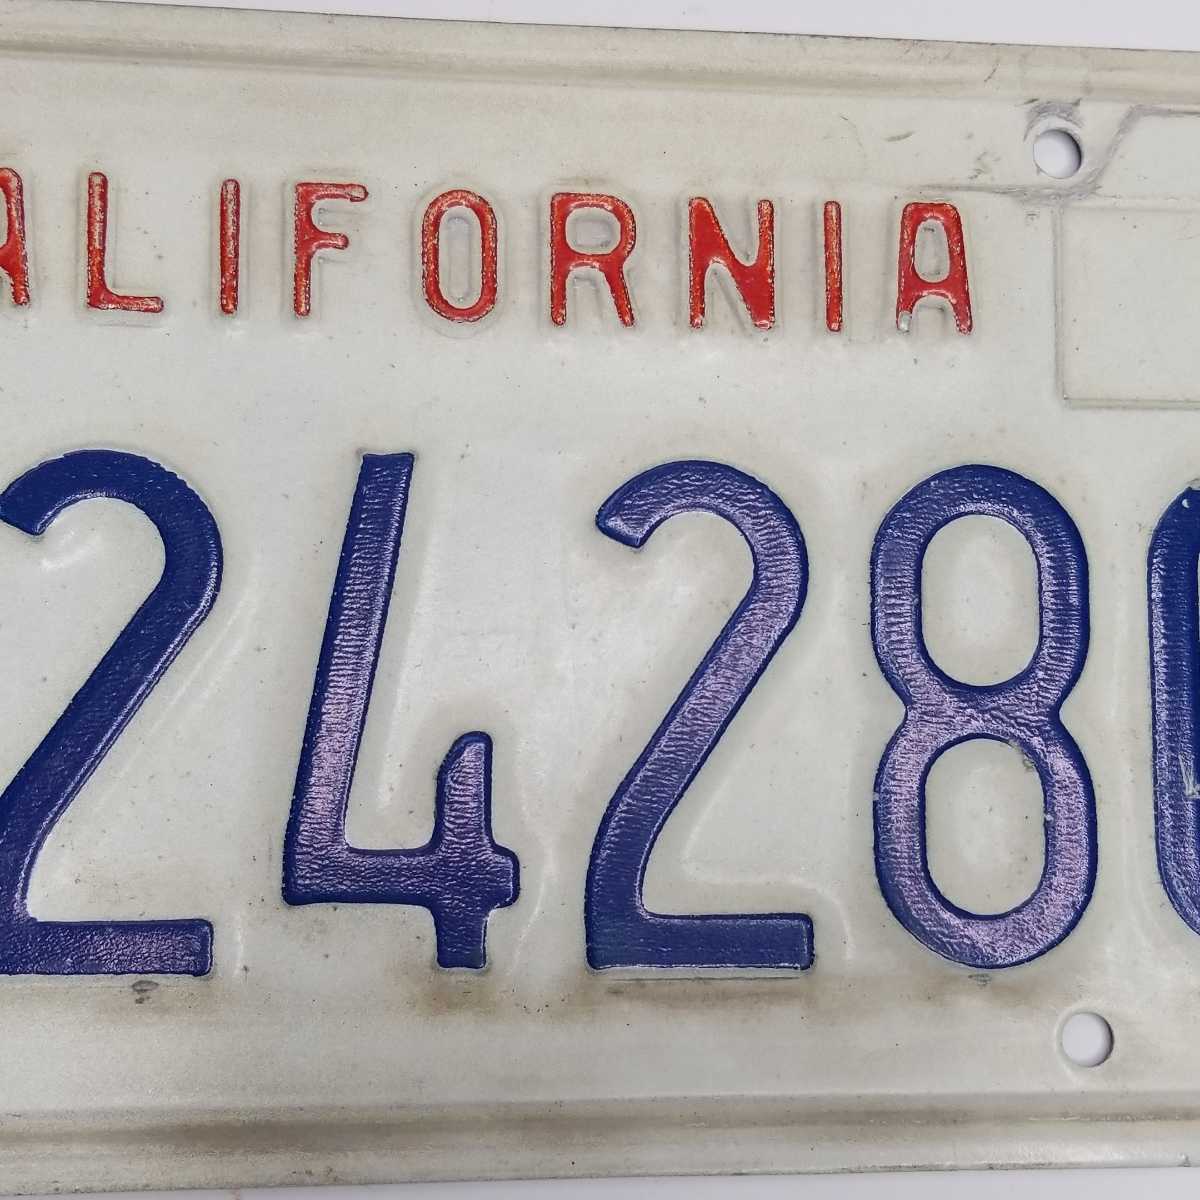  California номерная табличка America 3Z24280 гараж Cafe балка интерьер украшение 